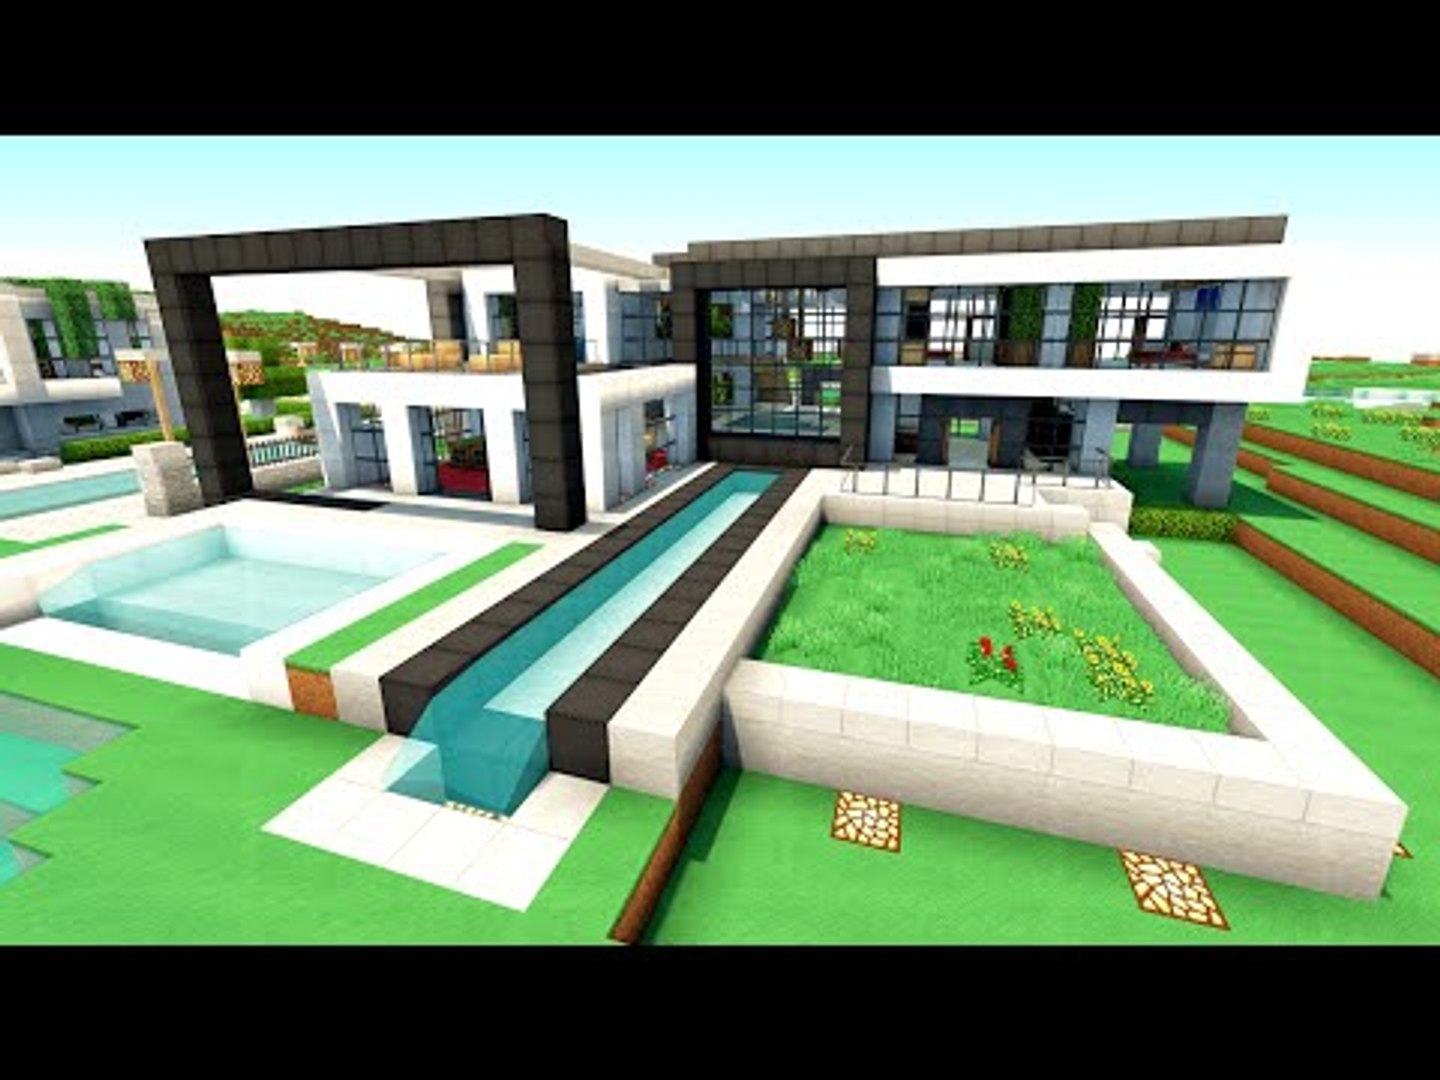 Minecraft: Construindo uma Casa Moderna 6 -   Casas minecraft,  Minecraft, Casa pequena e moderna no minecraft